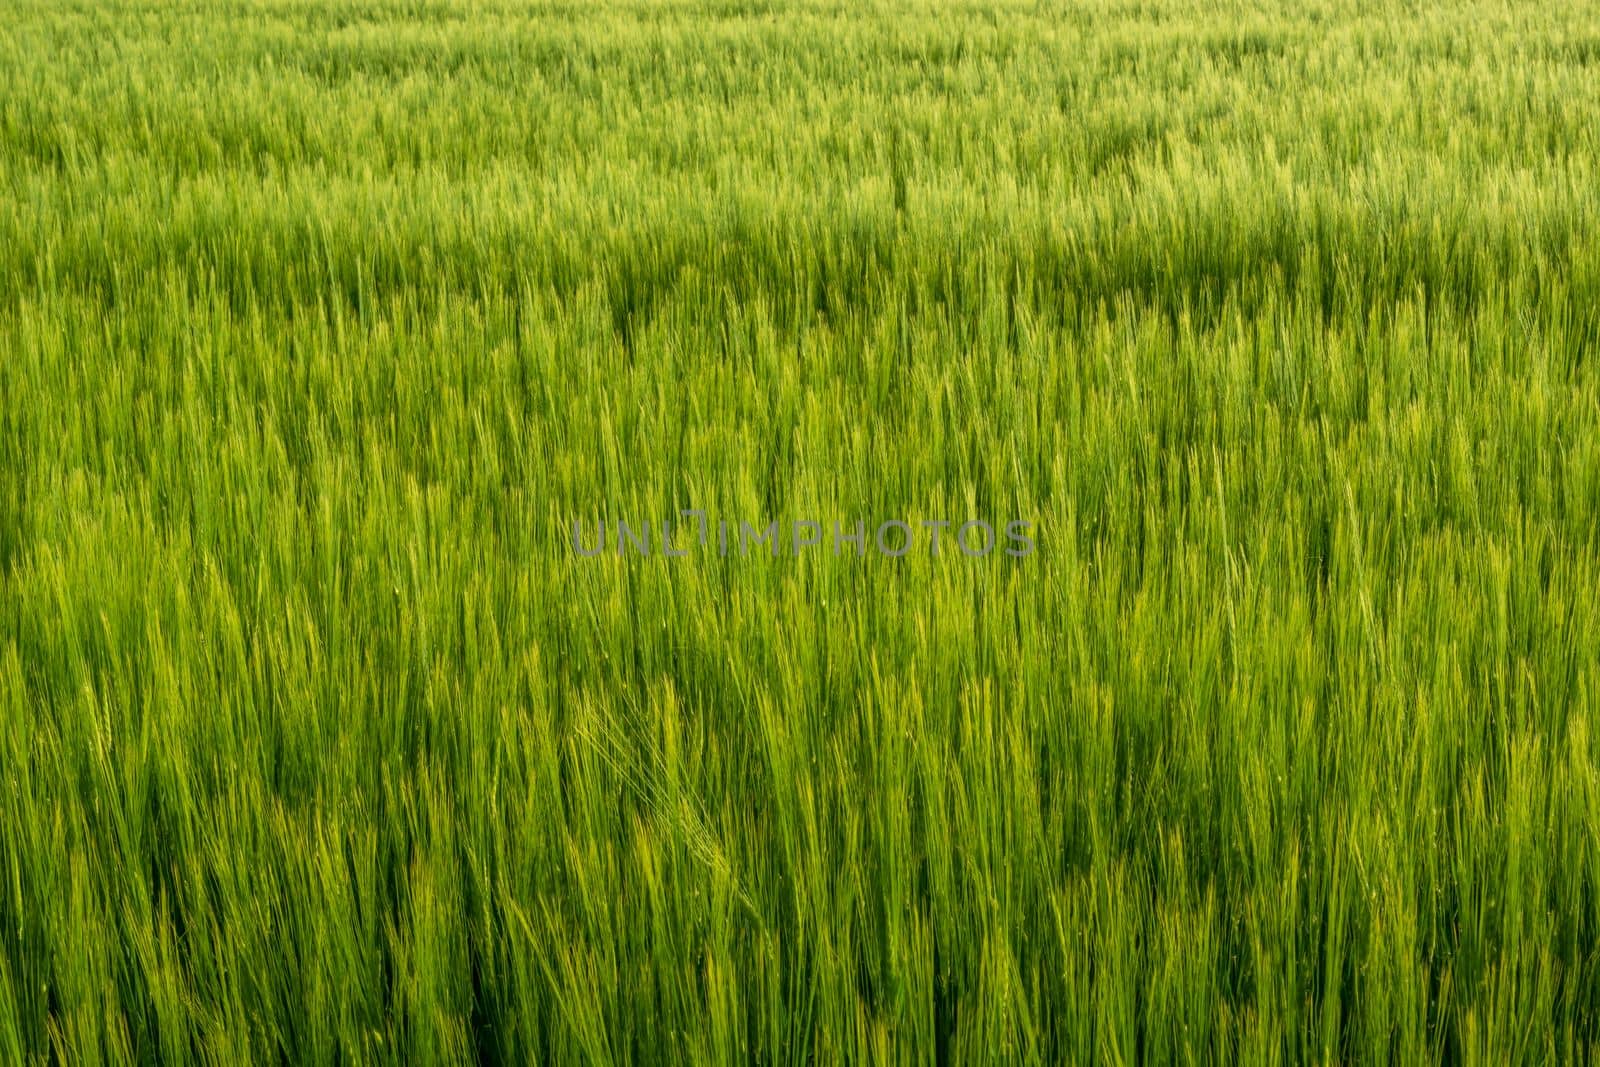 Green ears of barley grain in the field by darekb22